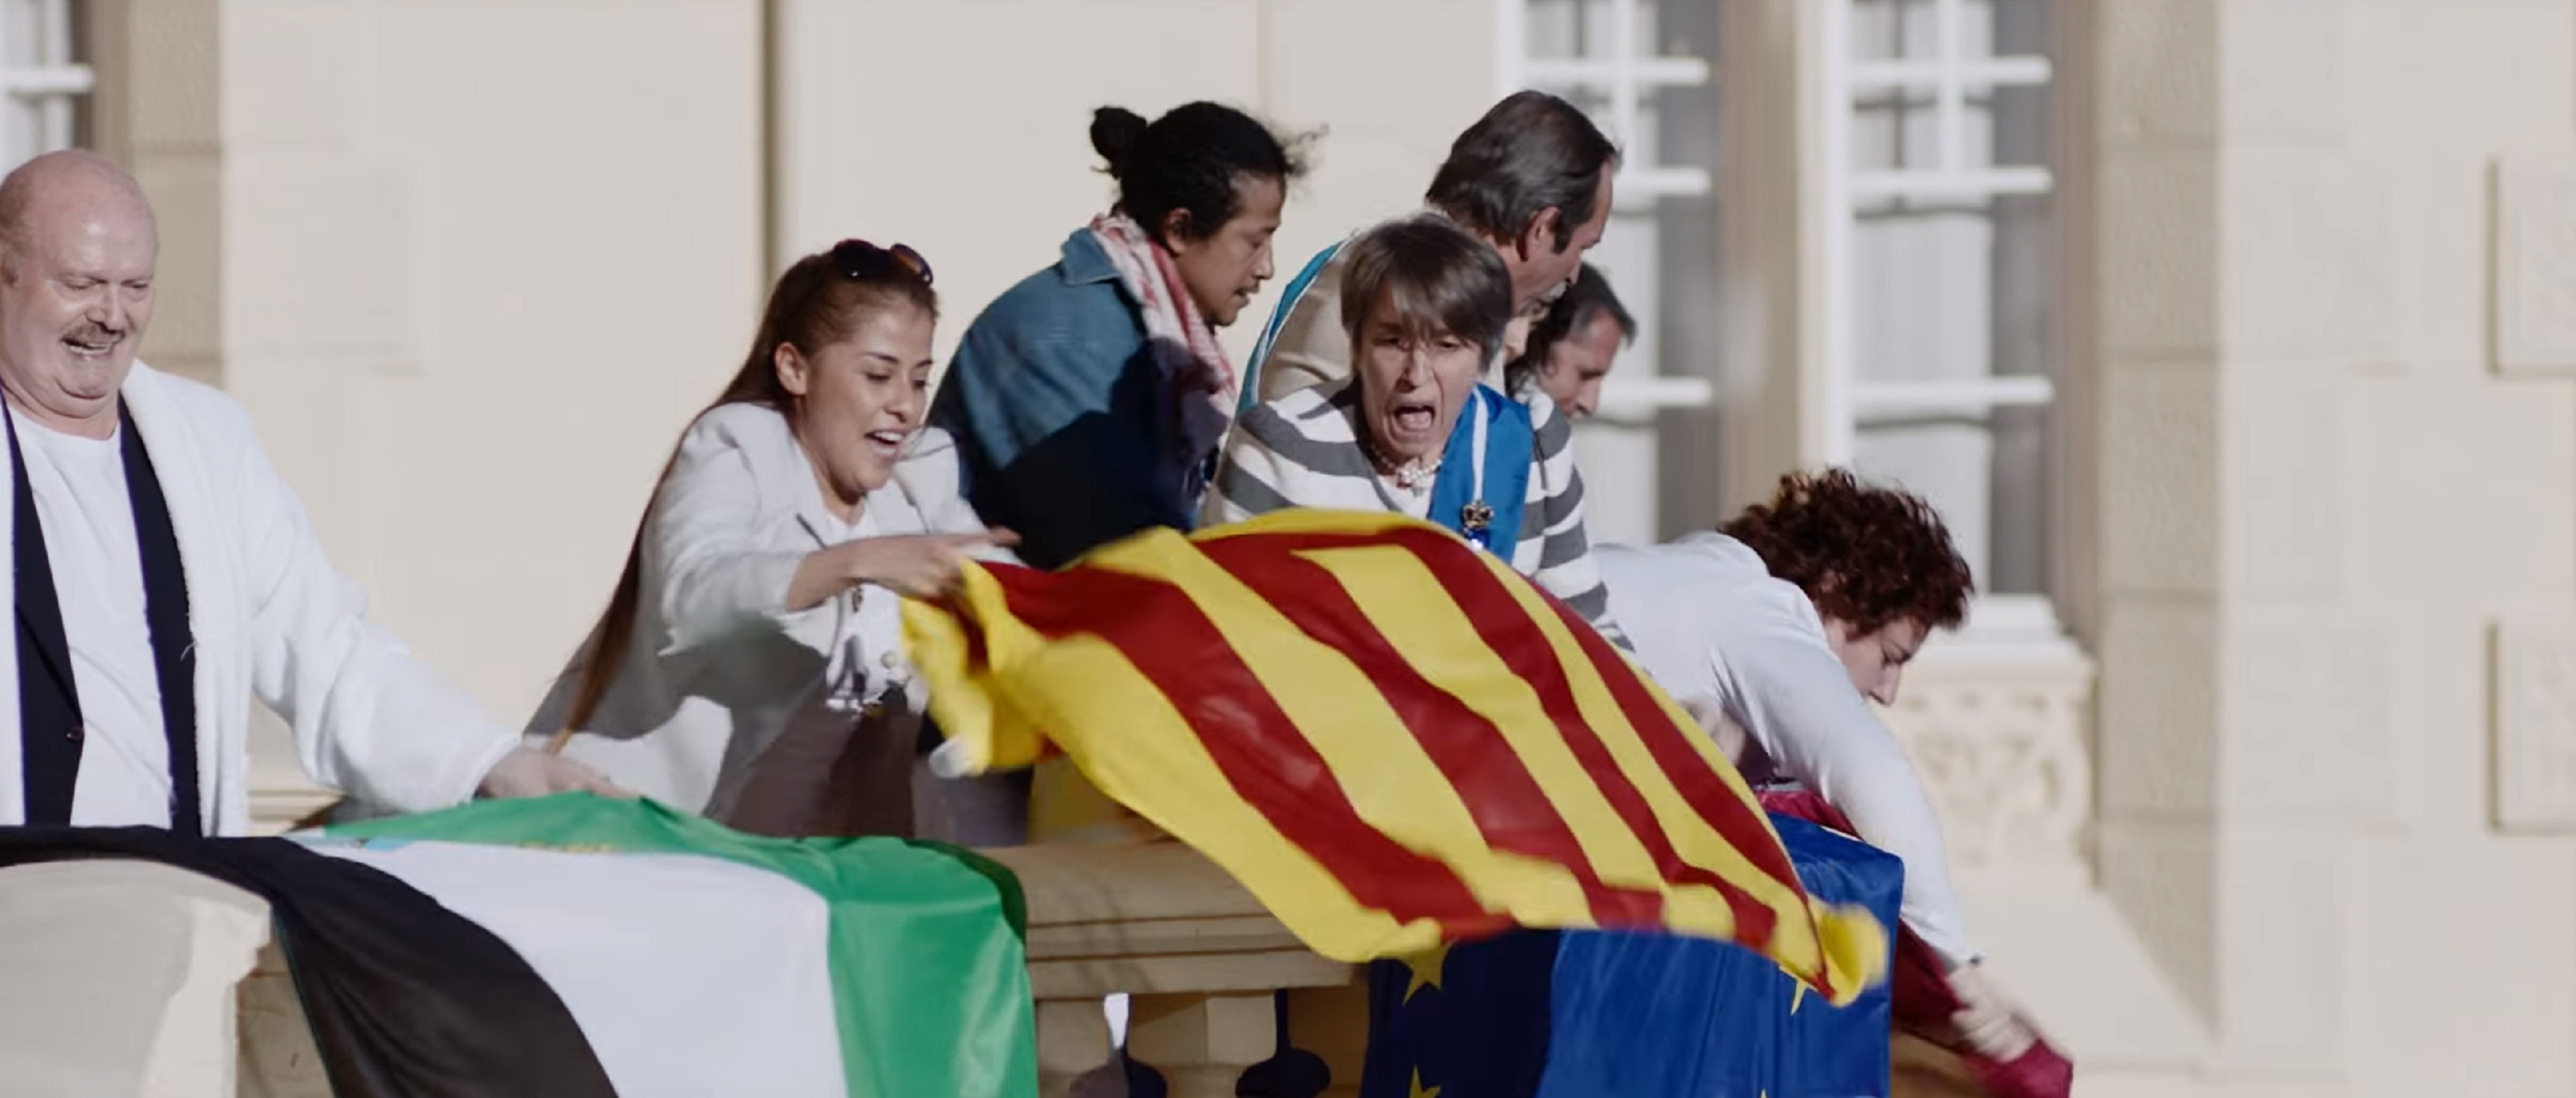 Destrossen l'espot de Campofrío per ser poc crític amb Catalunya